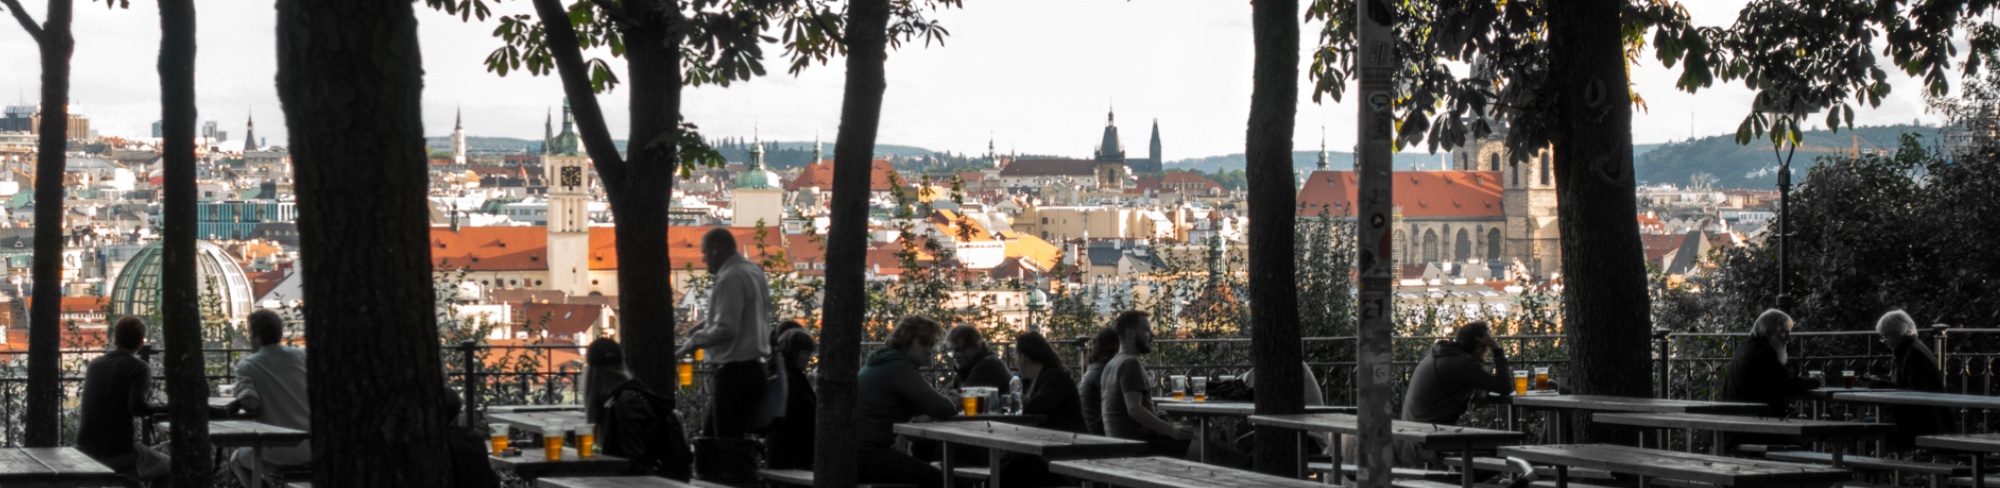 Prague Slide 7.jpg